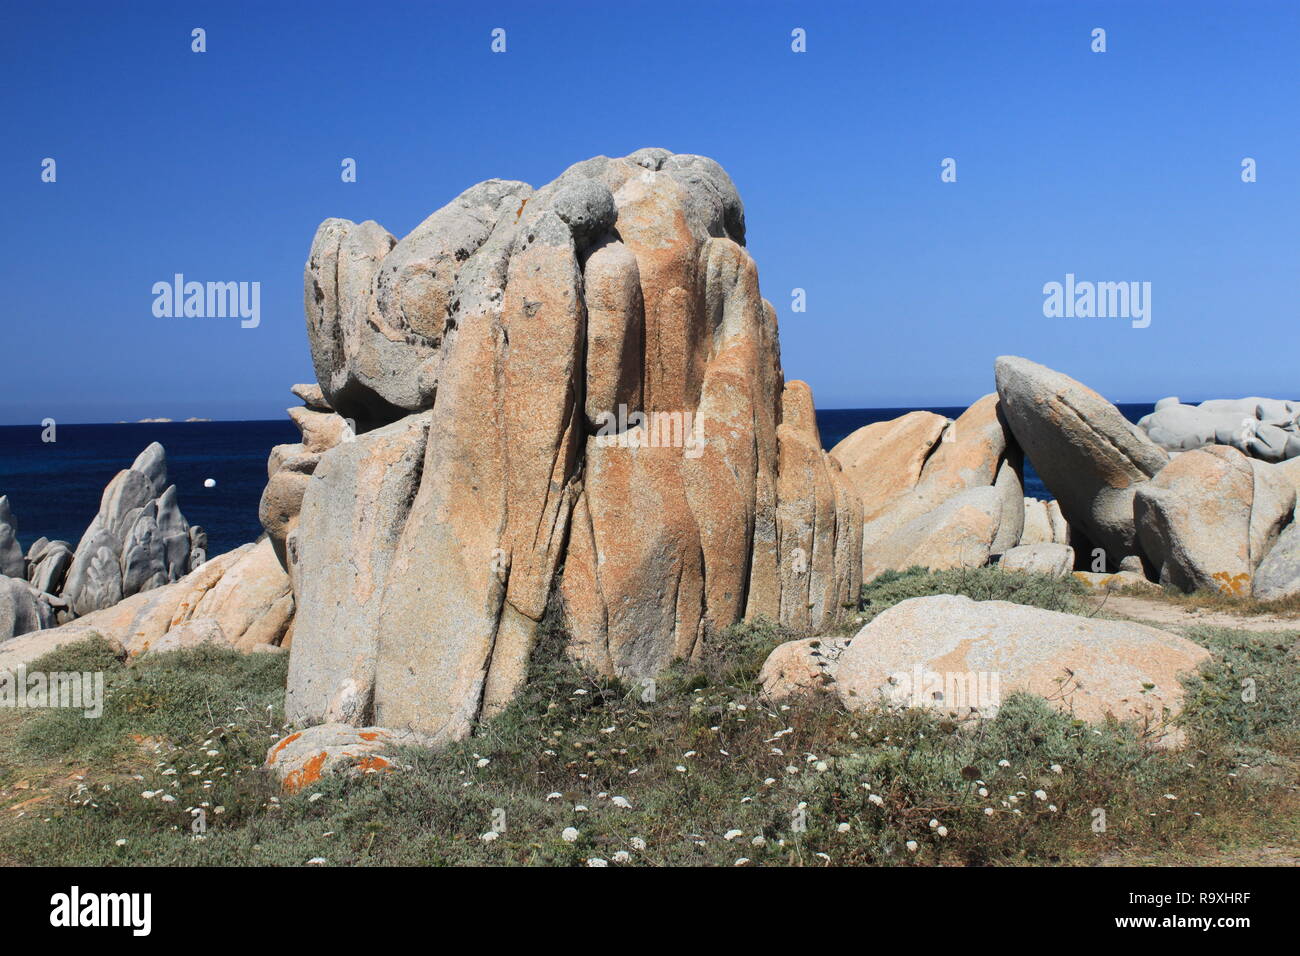 Les roches de granit à Iles Lavezzi, réserve naturelle de Bonifacio, Corse, France Banque D'Images